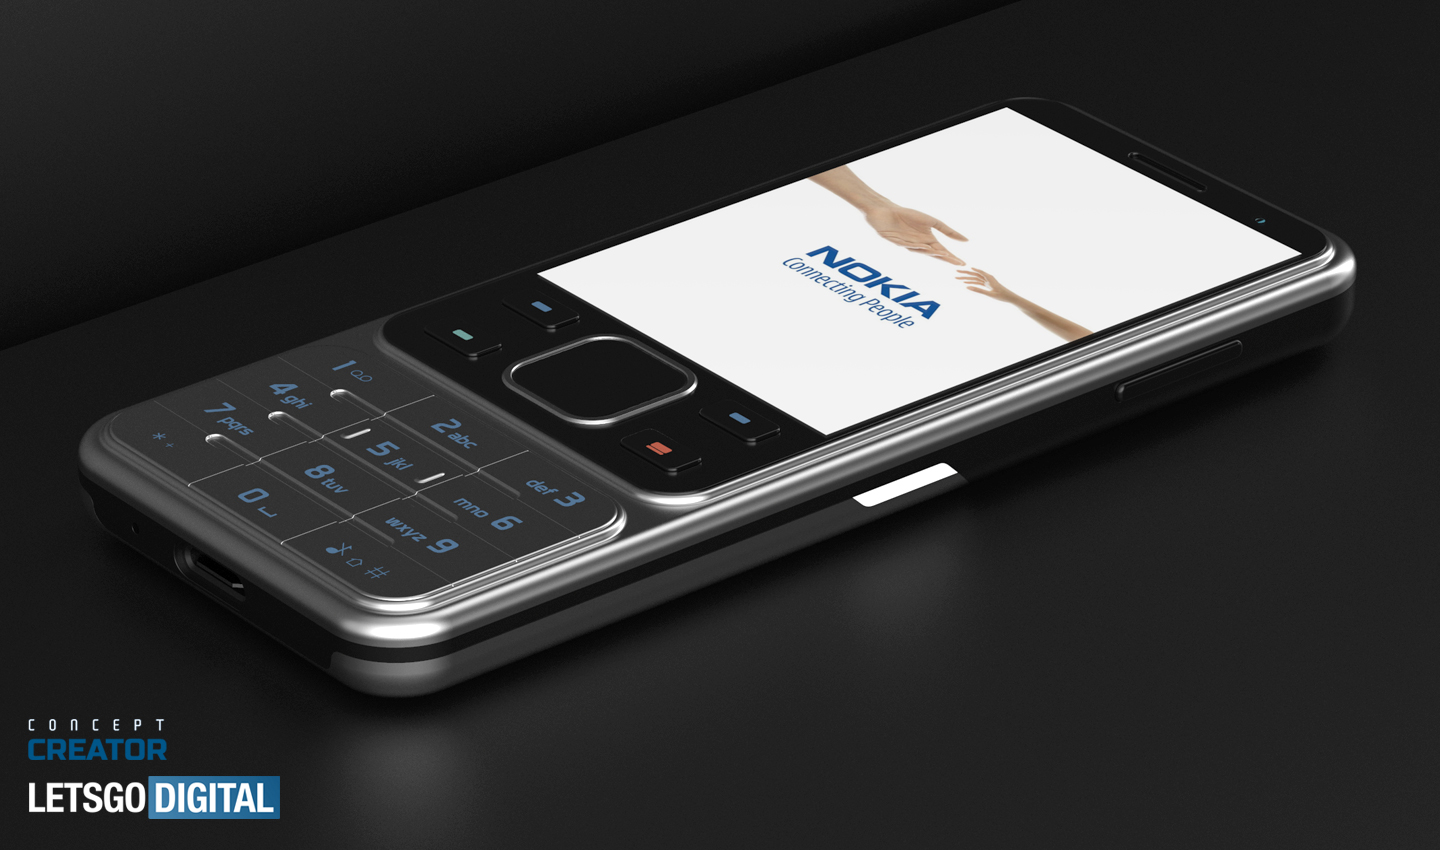 Nokia 6300 4G feature phone (2020 model) LetsGoDigital